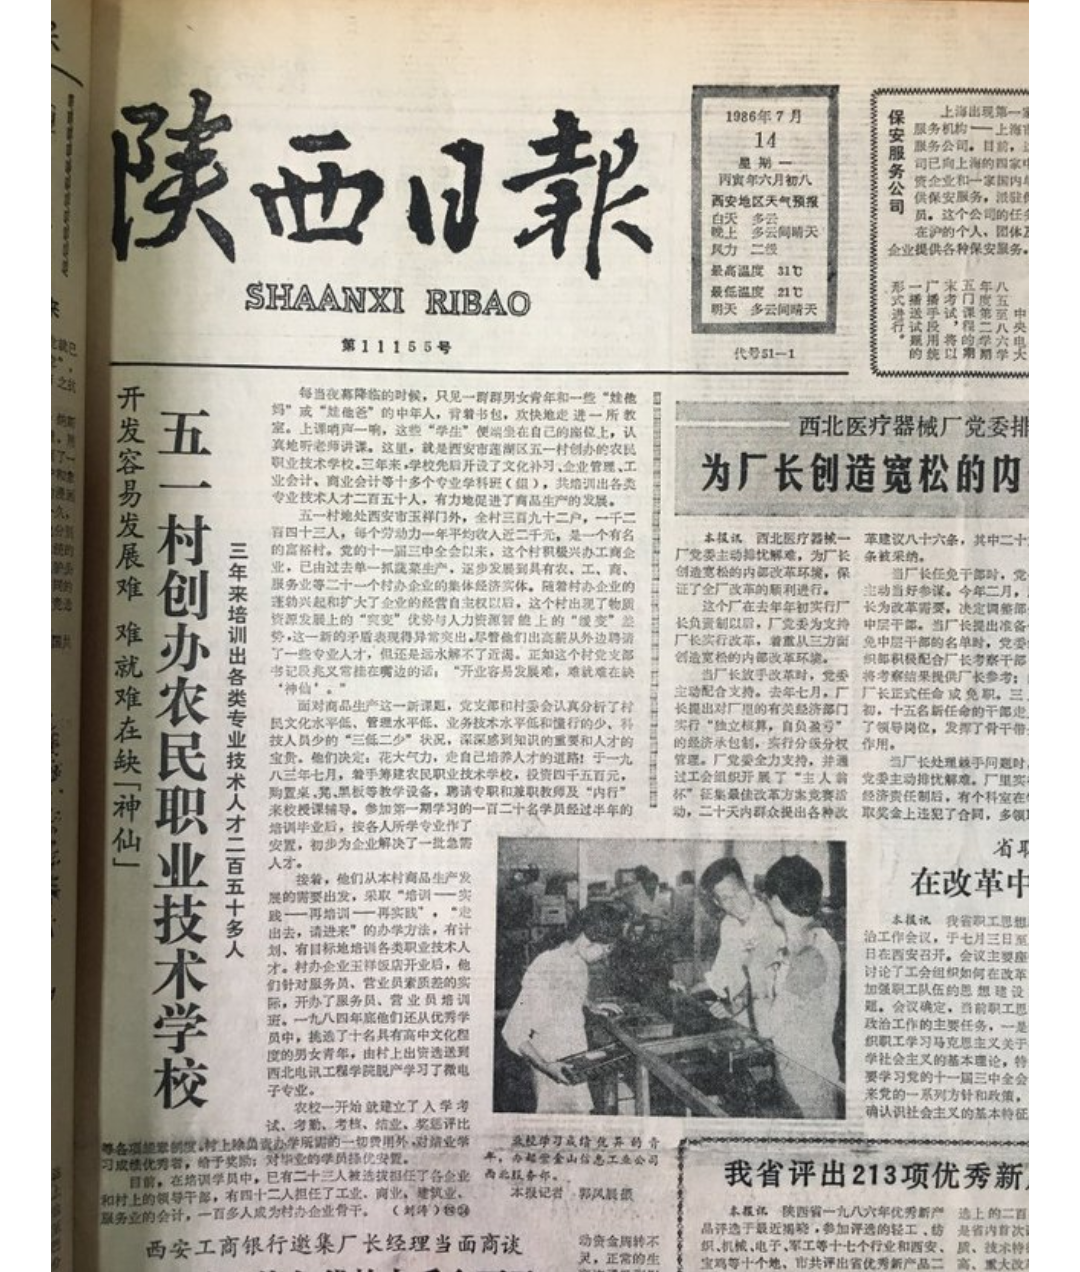 33年前,我采写的《陕西日报》头版头条文章标题今天依然适用